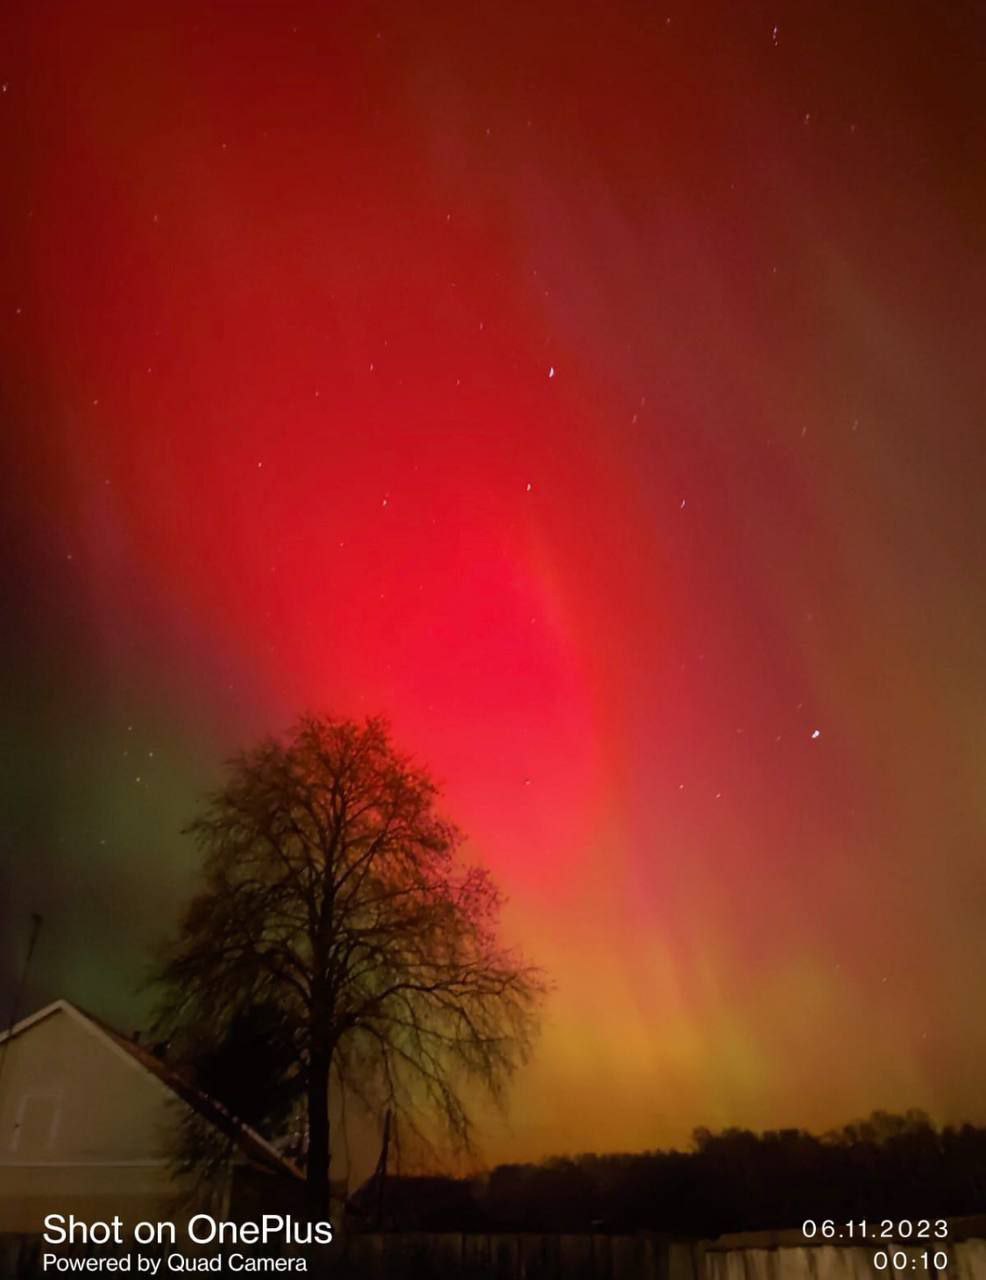 aurora boreale Novosibirsk russia